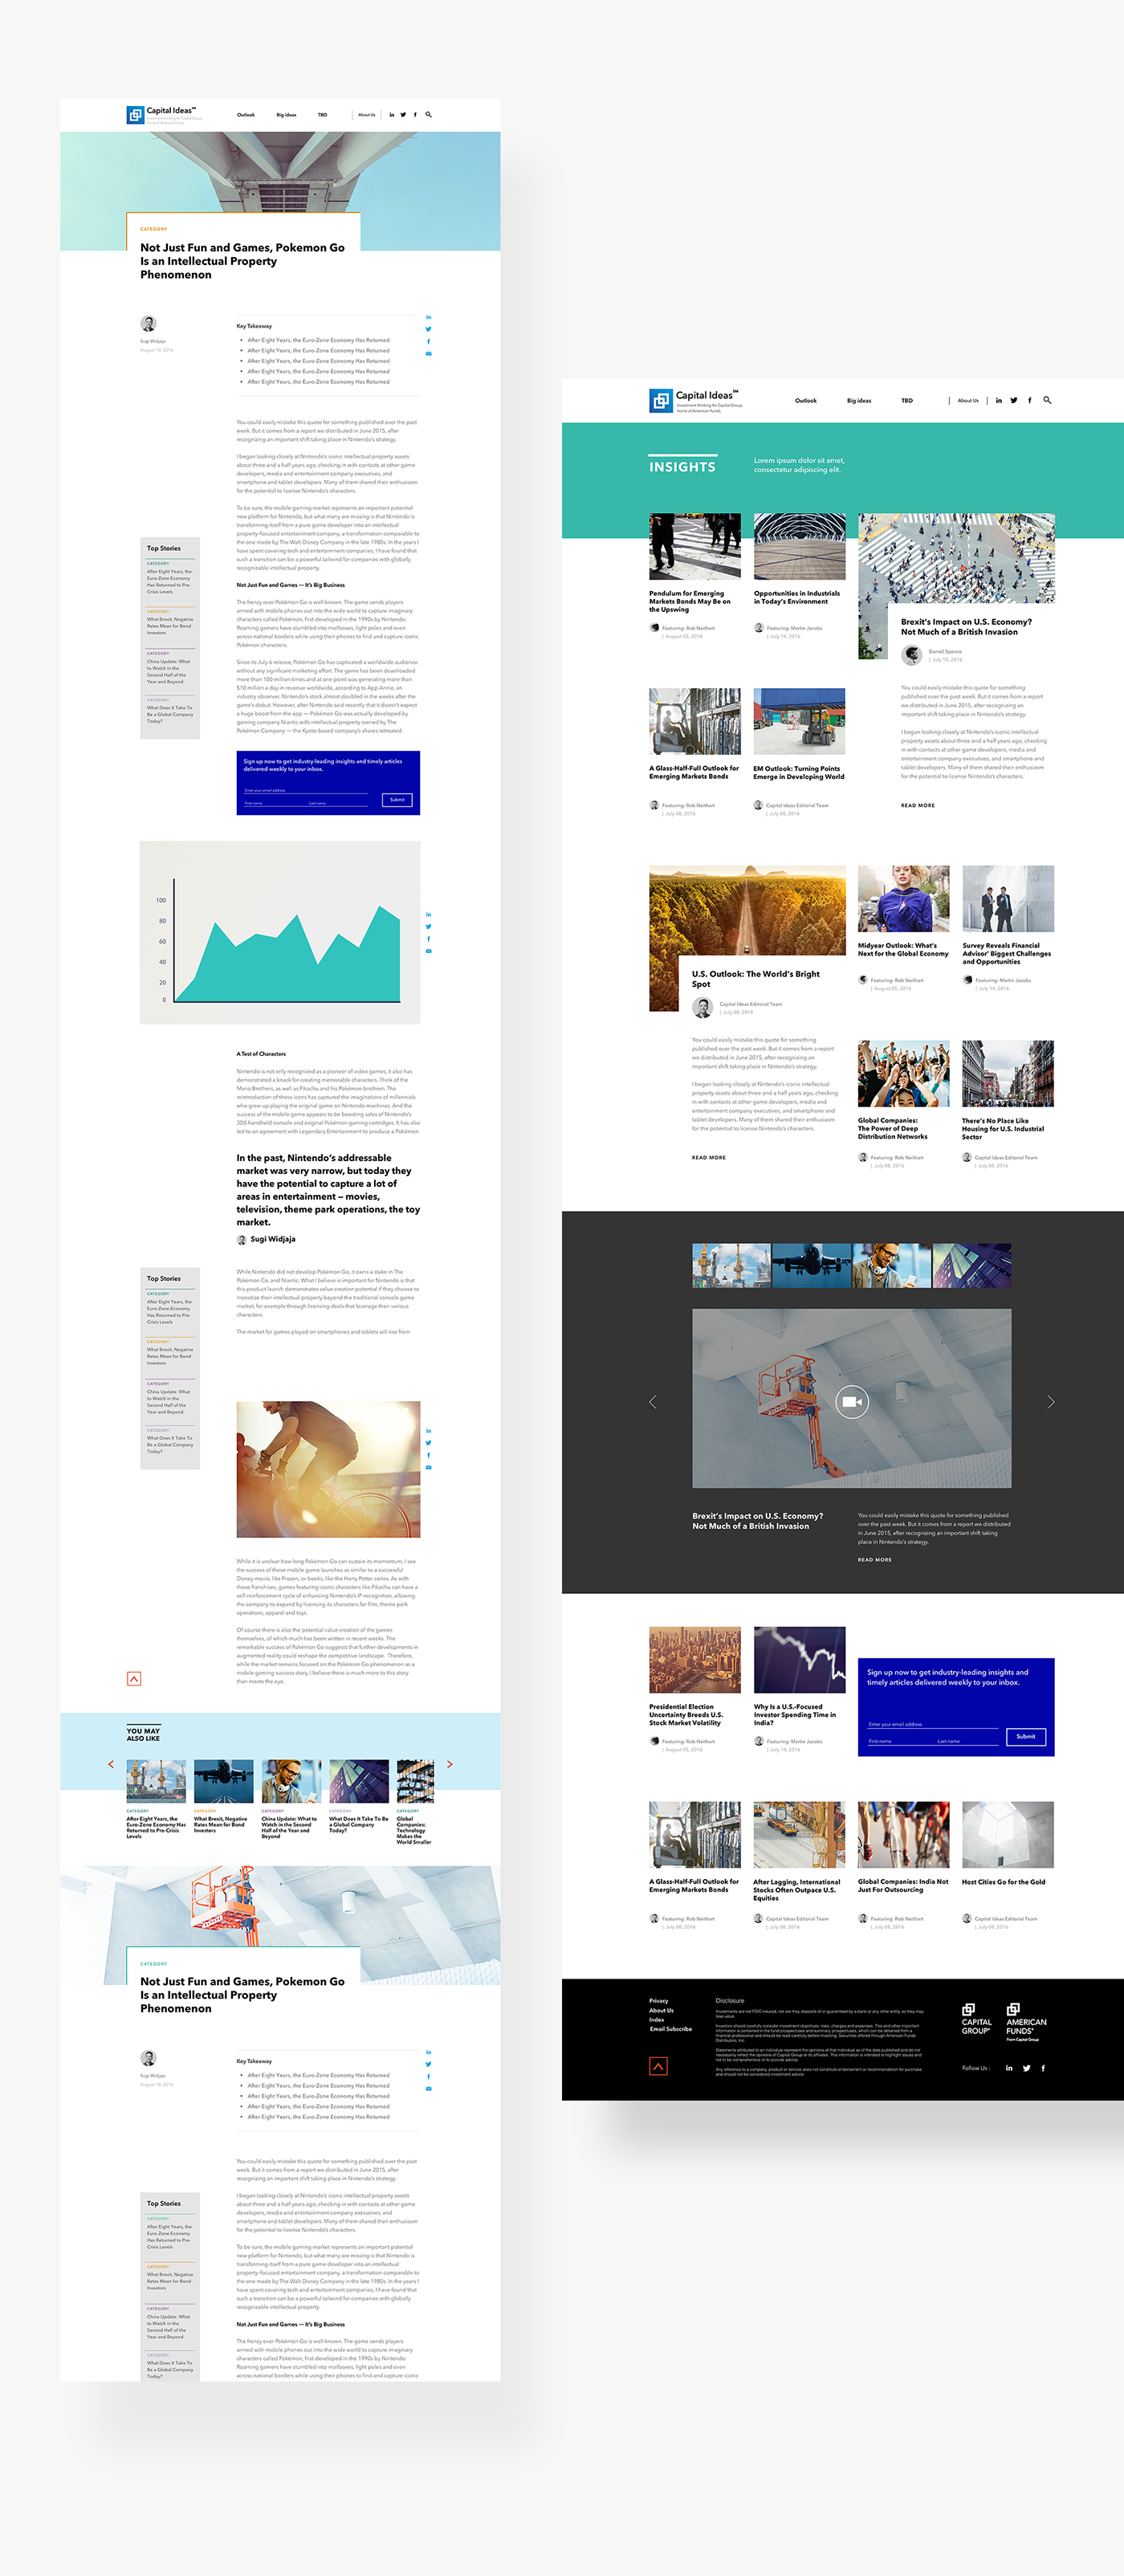 Web Design  Website branding  Interaction design  Content Marketing News platform finance capital ideas art direction  uiux